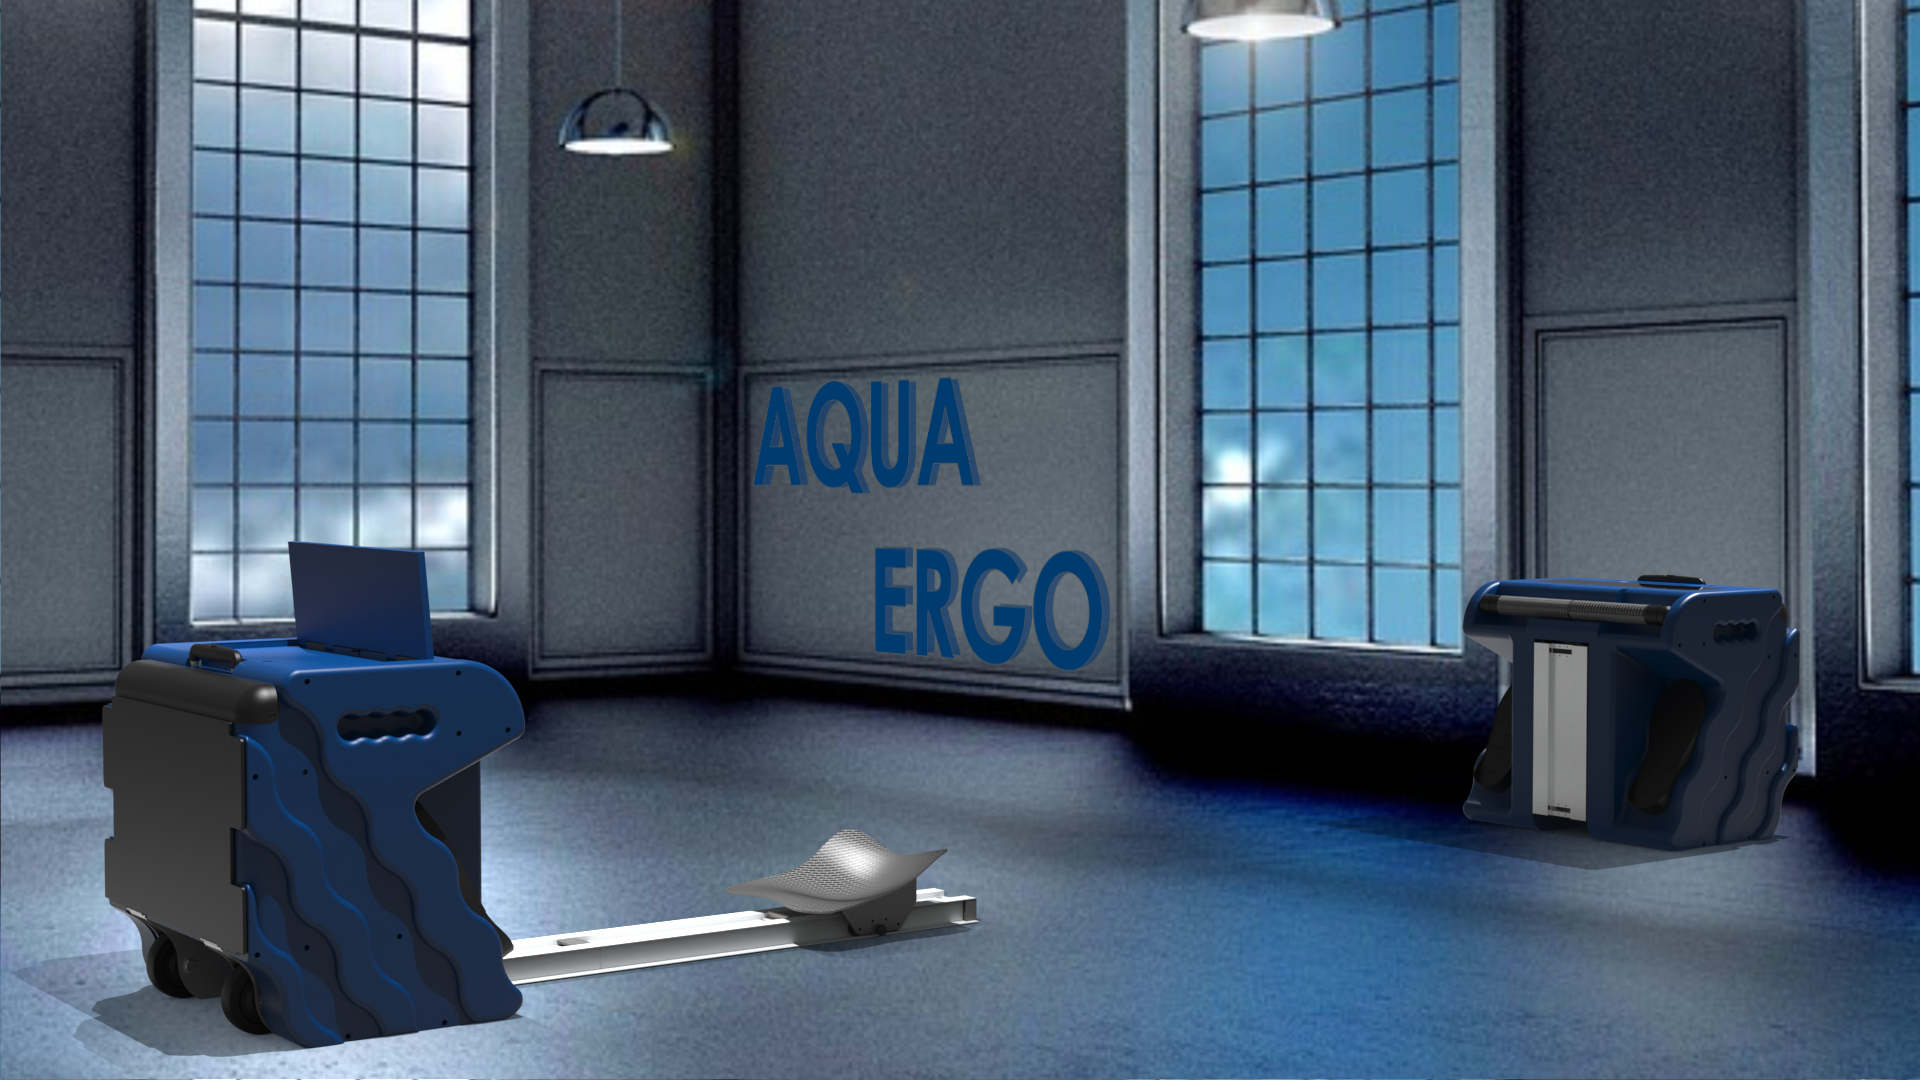 Aqua-Ergo image 6